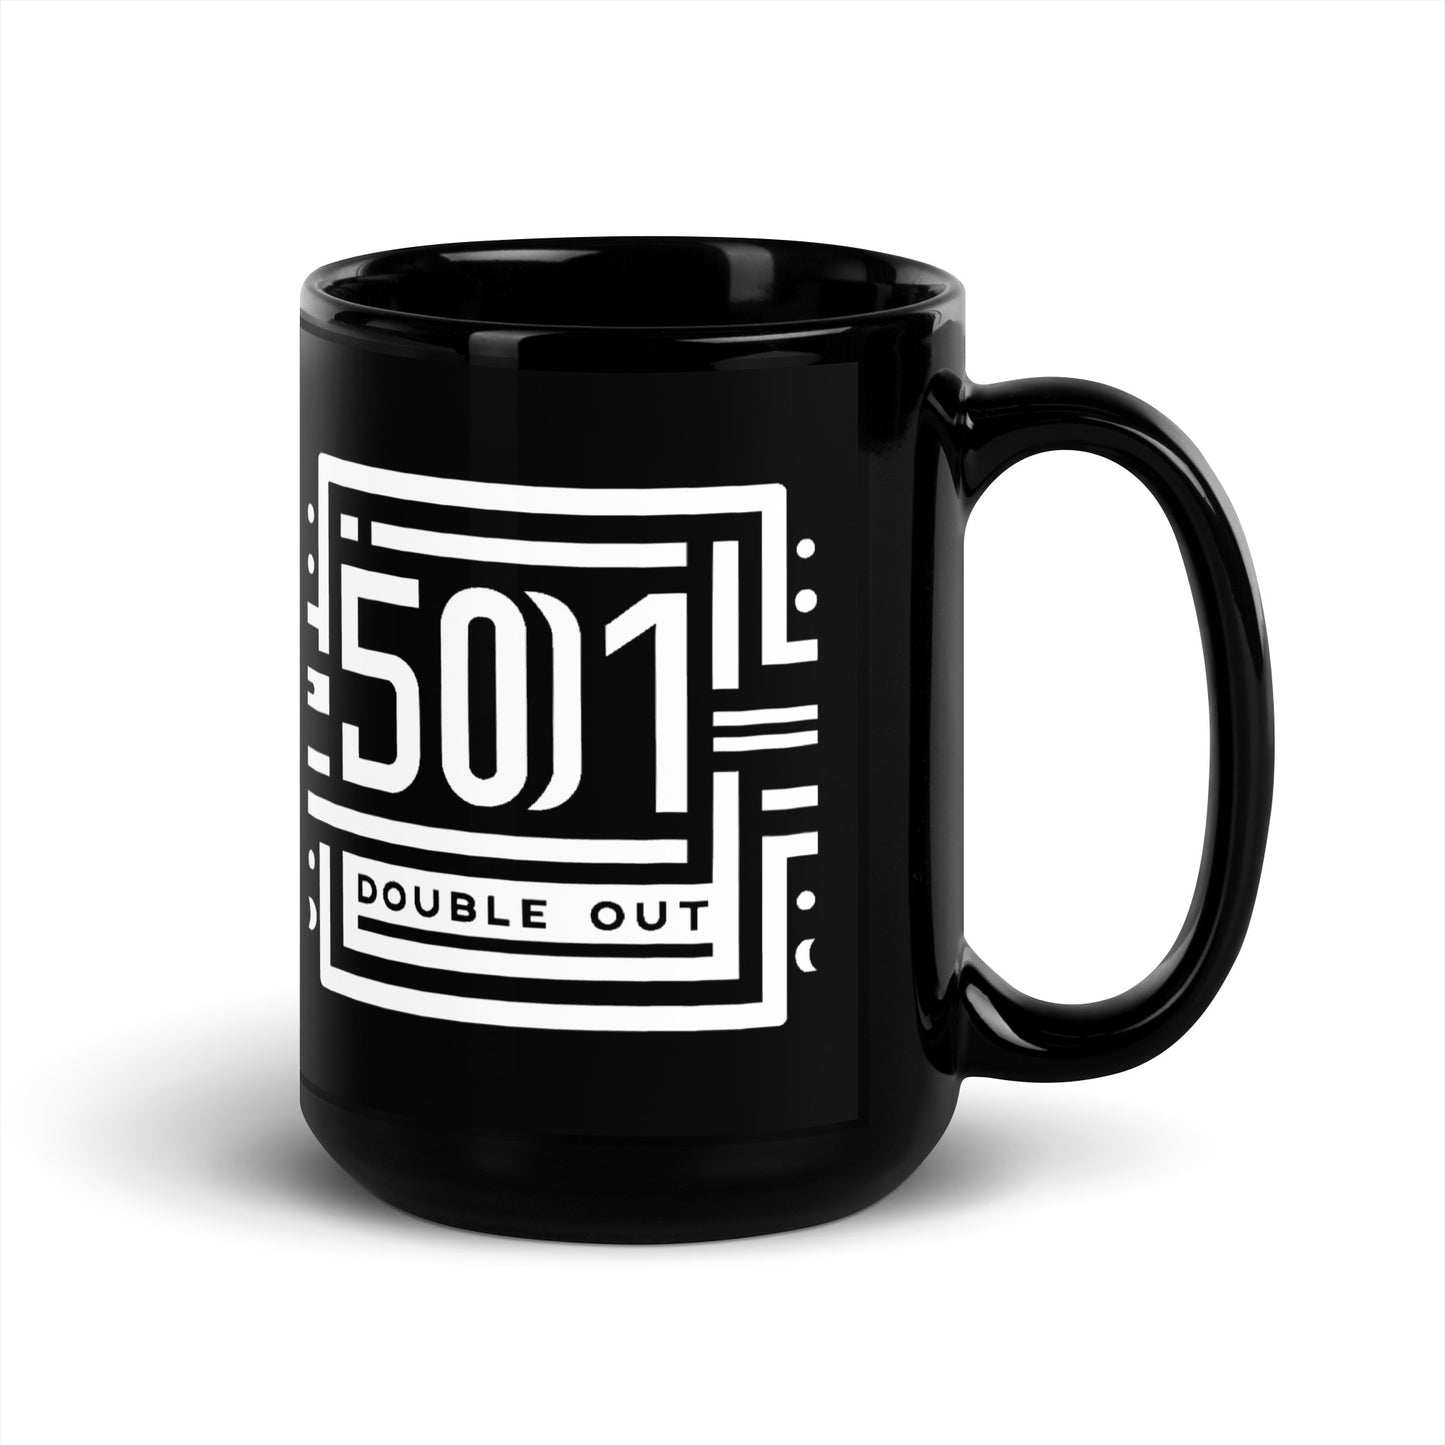 Schwarze glänzende Tasse Kaffeetasse 501 Double Out 2.0 w